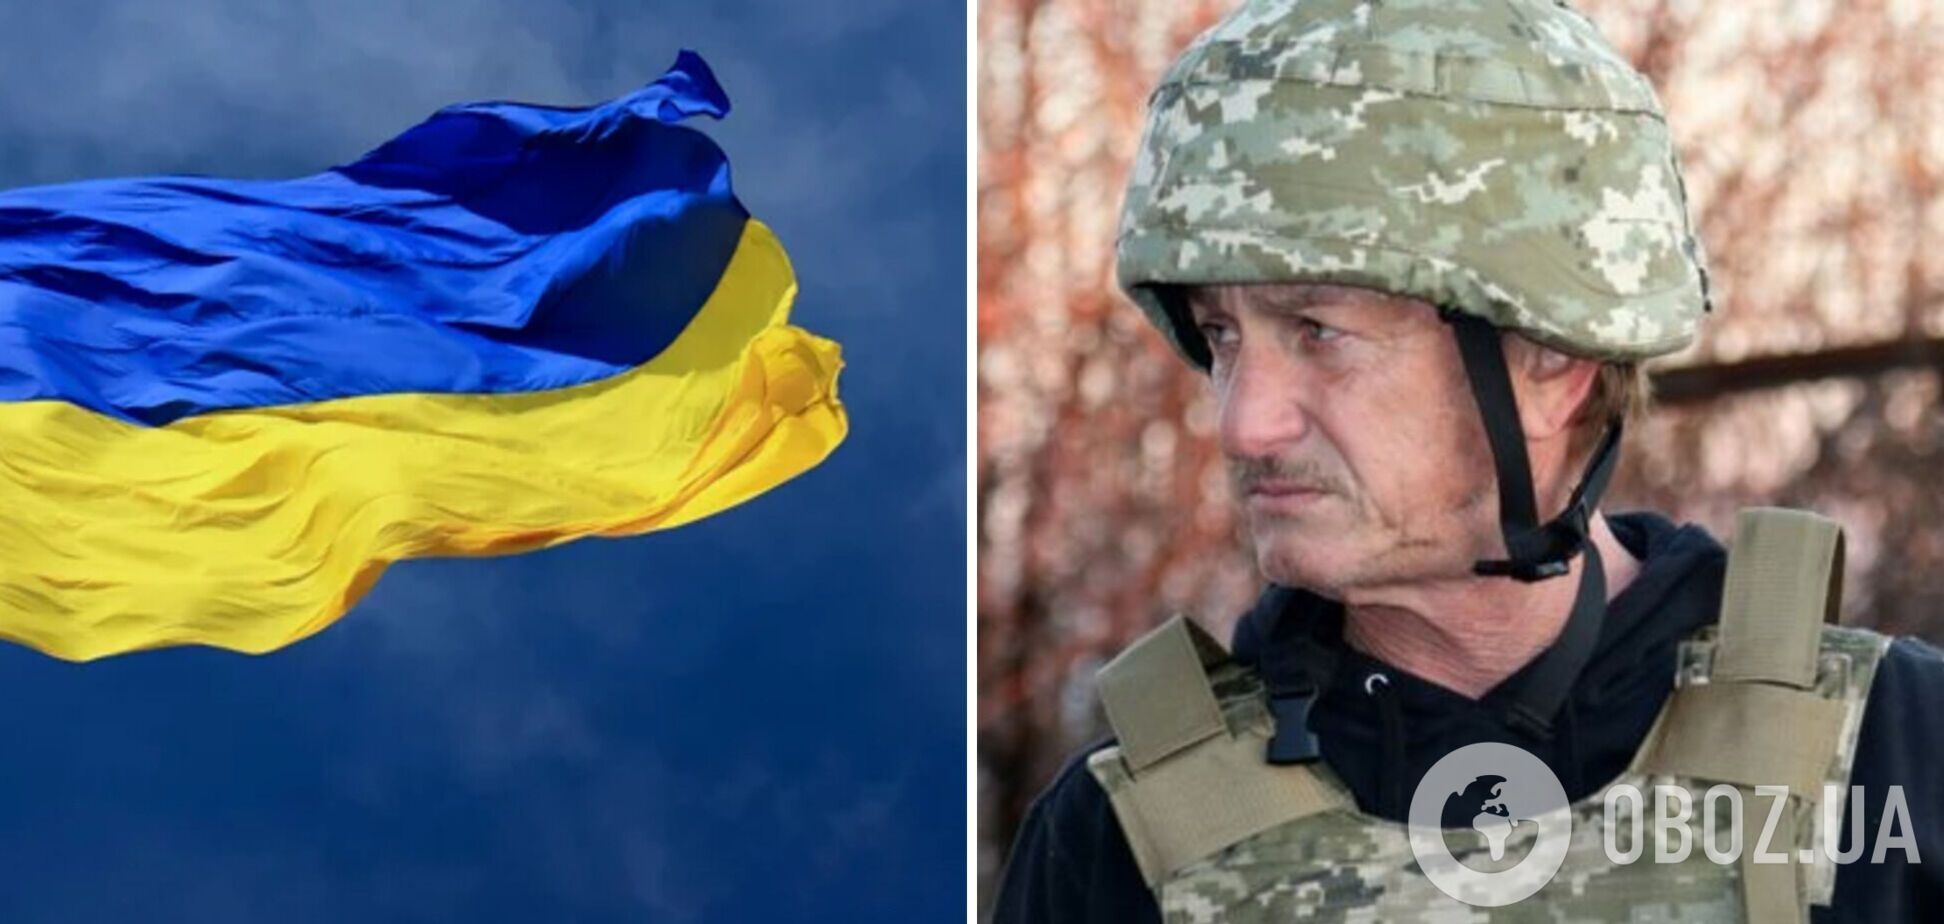 Шона Пенна поразило, как украинскую нацию объединила борьба против общего врага – России